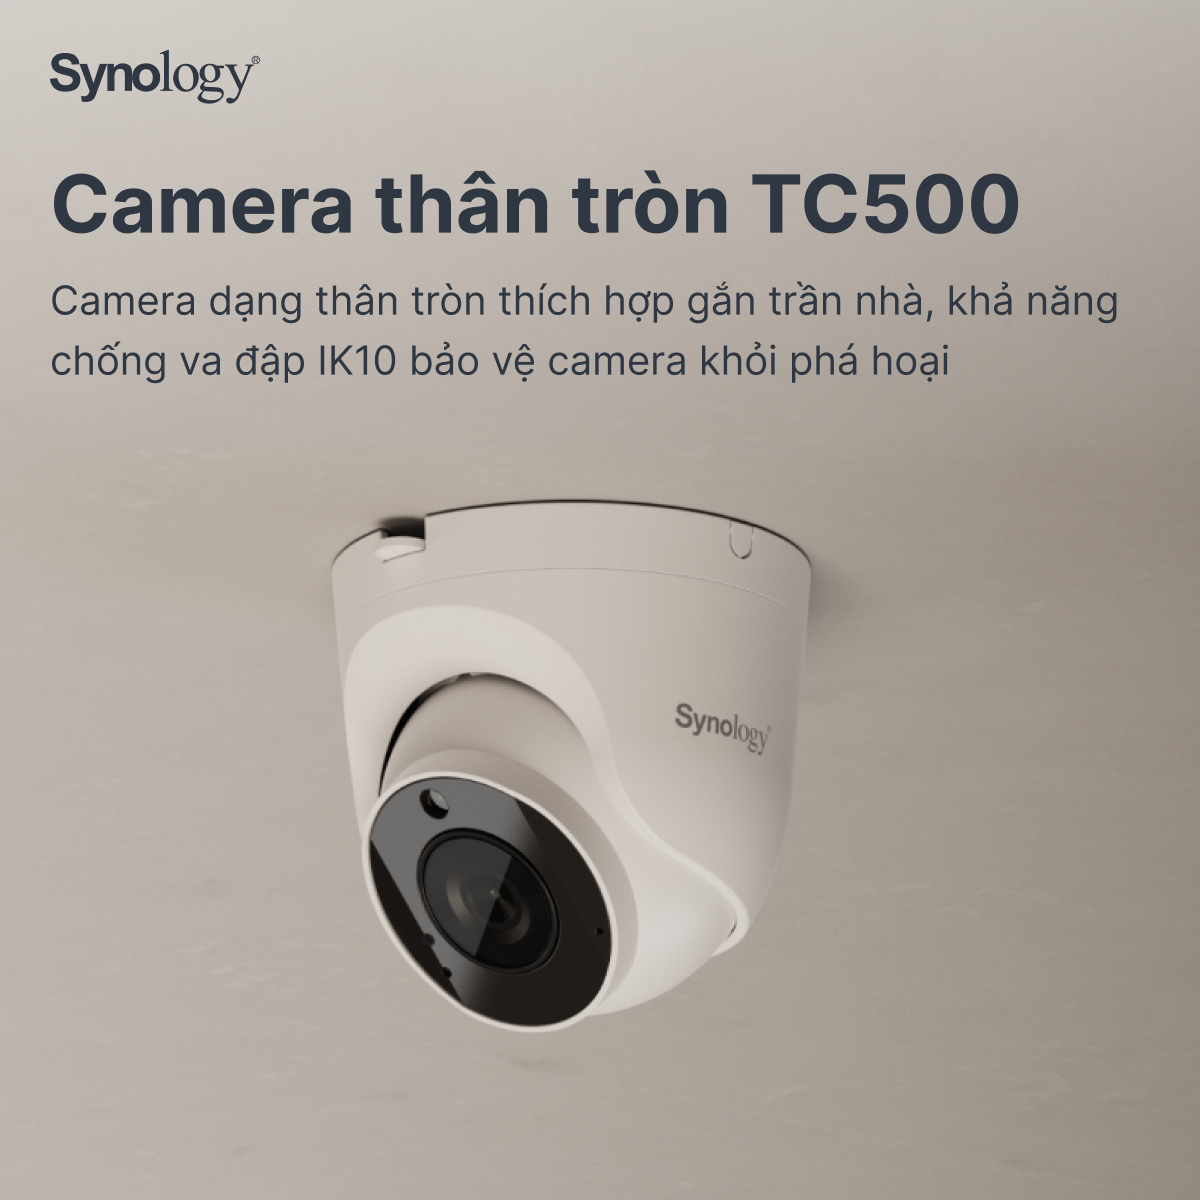 Synology vừa chính thức cho ra mắt camera IP đầu tiên của mình là BC500 và TC500 với các tính...